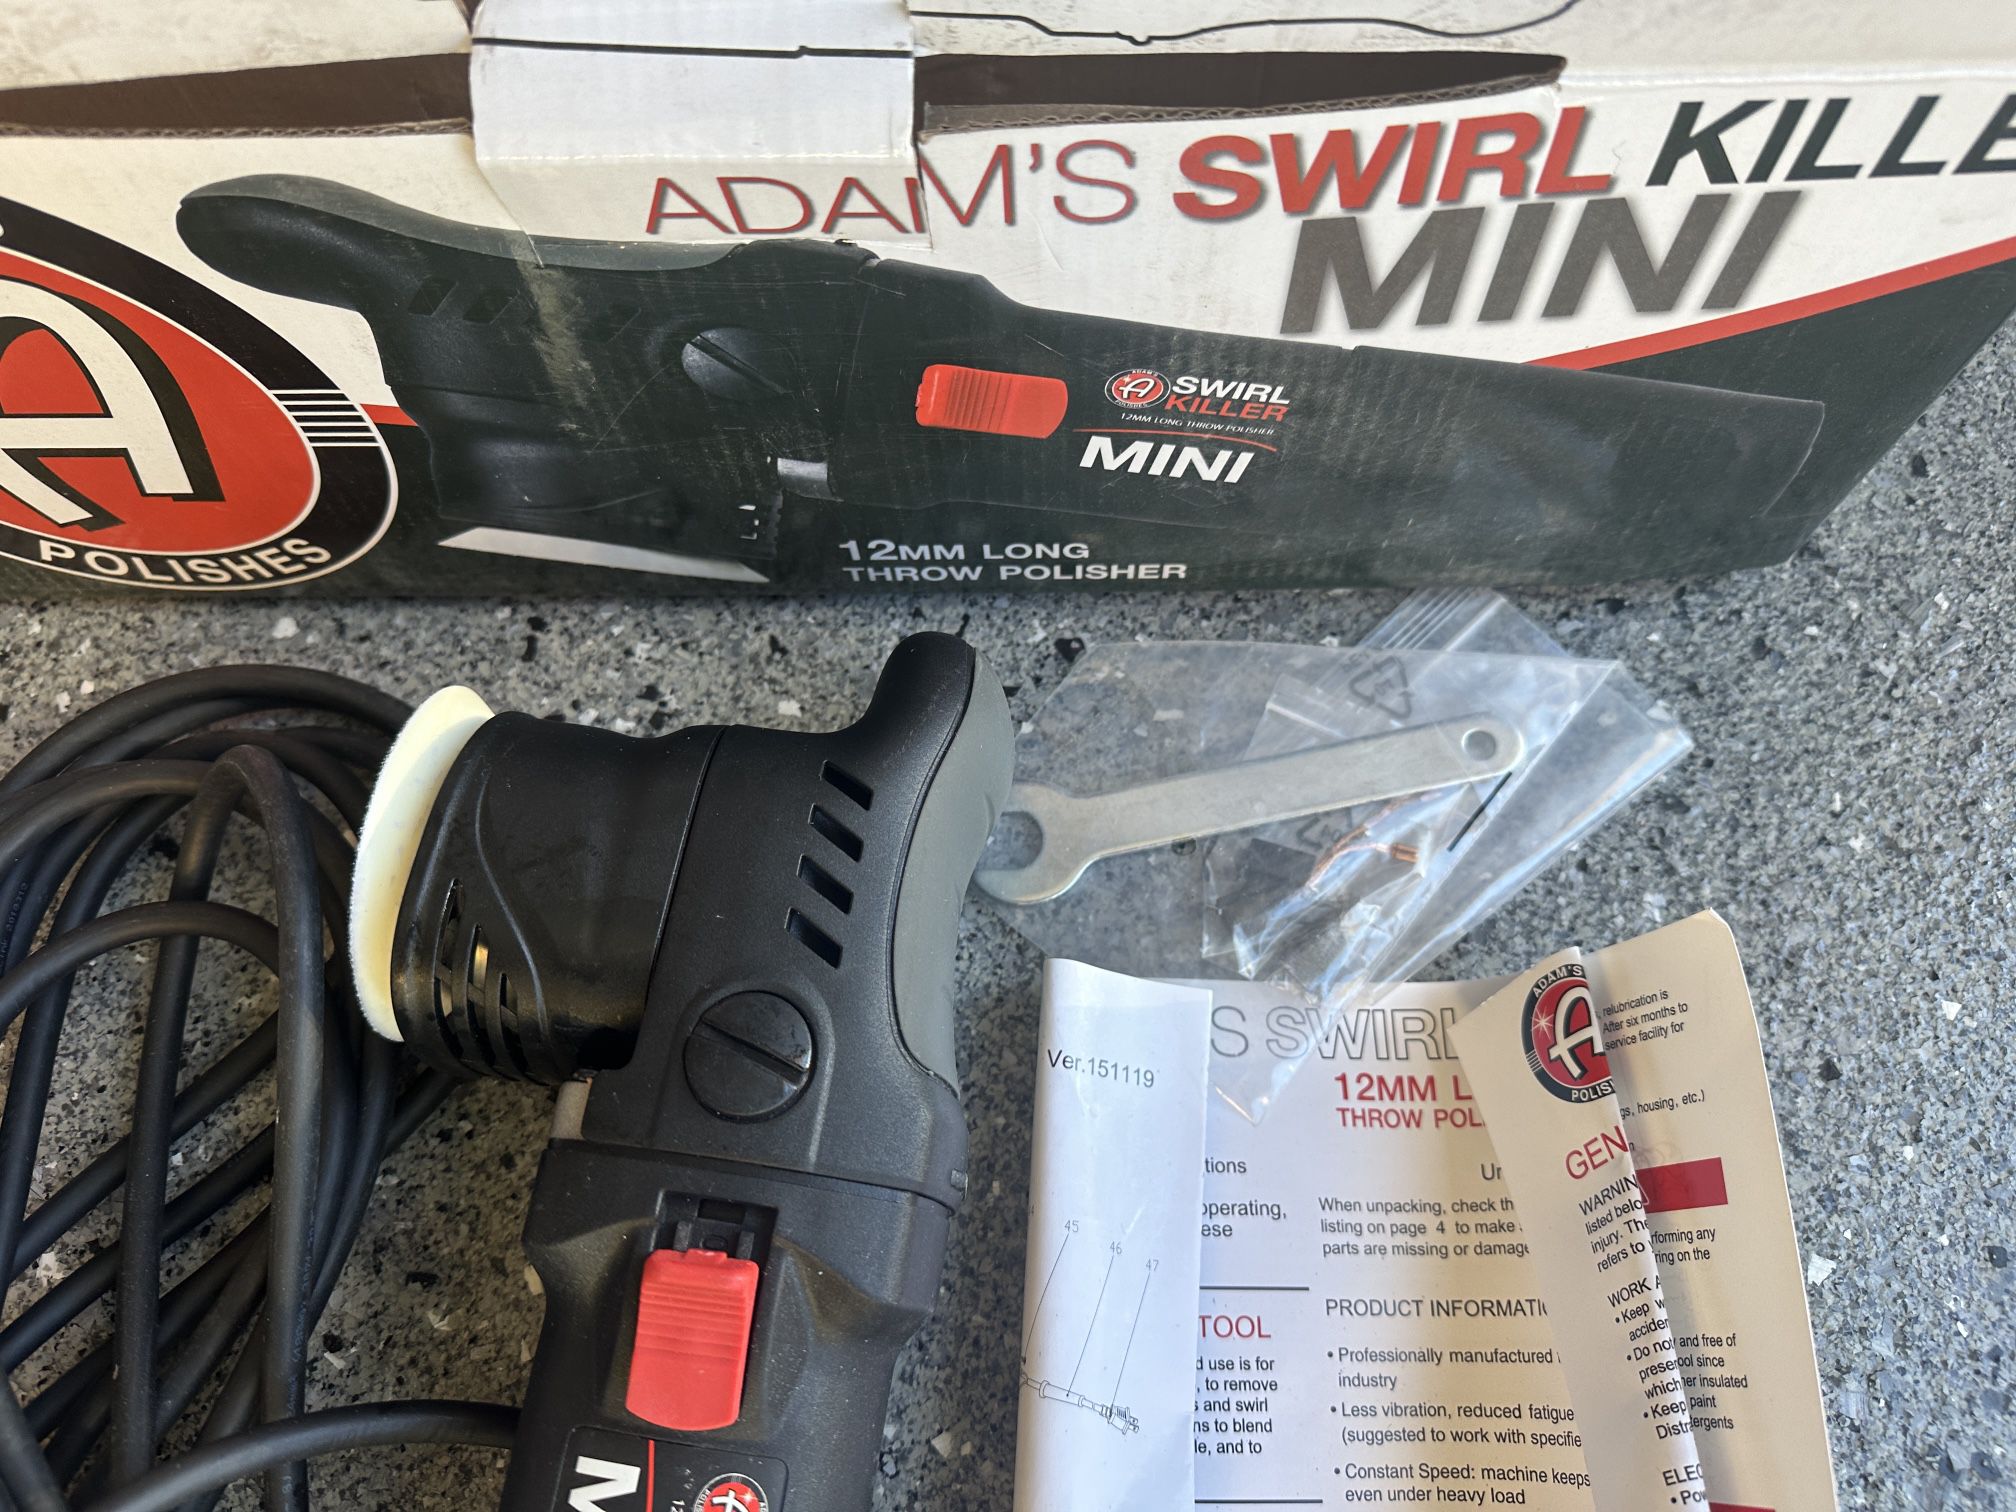 Adam's Swirl Killer MINI 12mm LT Polisher